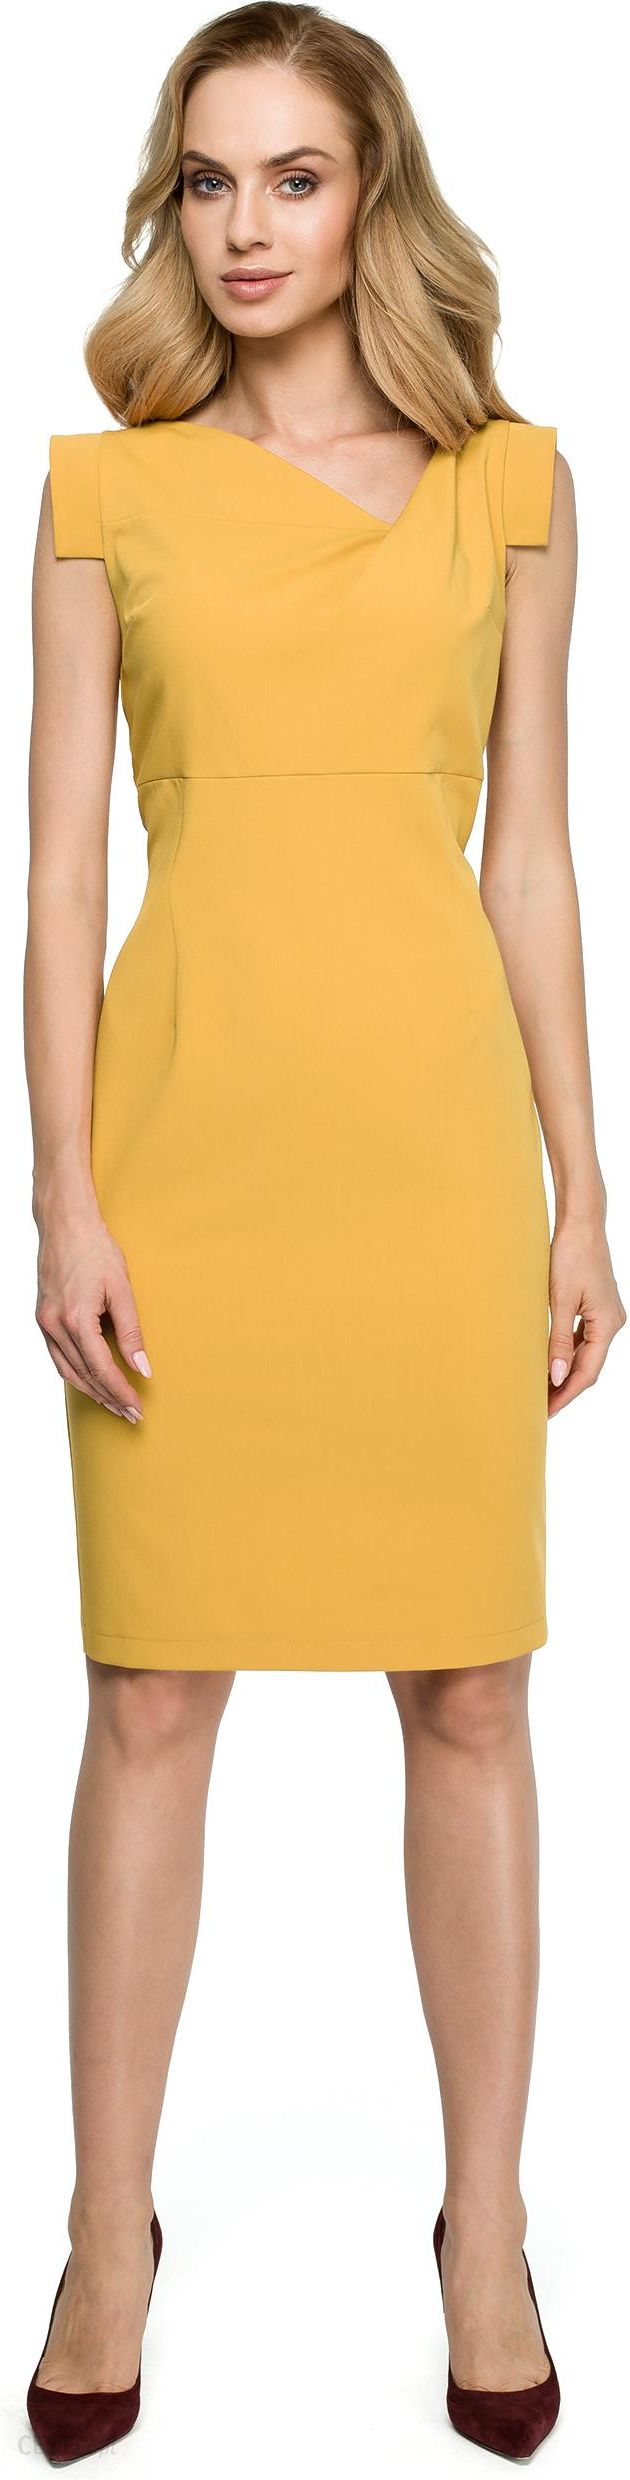 Style Ołówkowa sukienka ze zjawiskowym dekoltem Żółty L